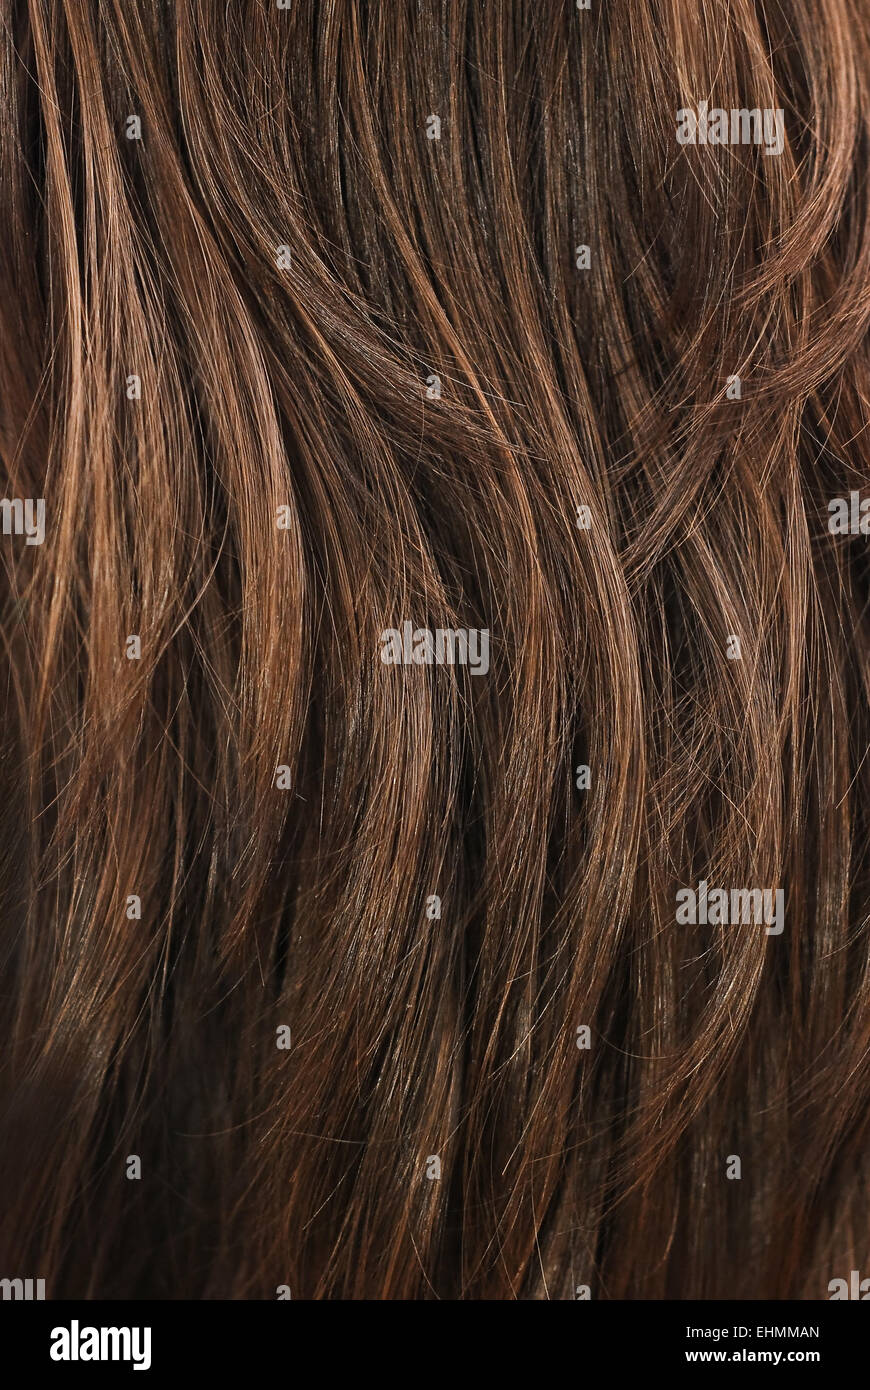 La texture des cheveux brun closeup détail Banque D'Images